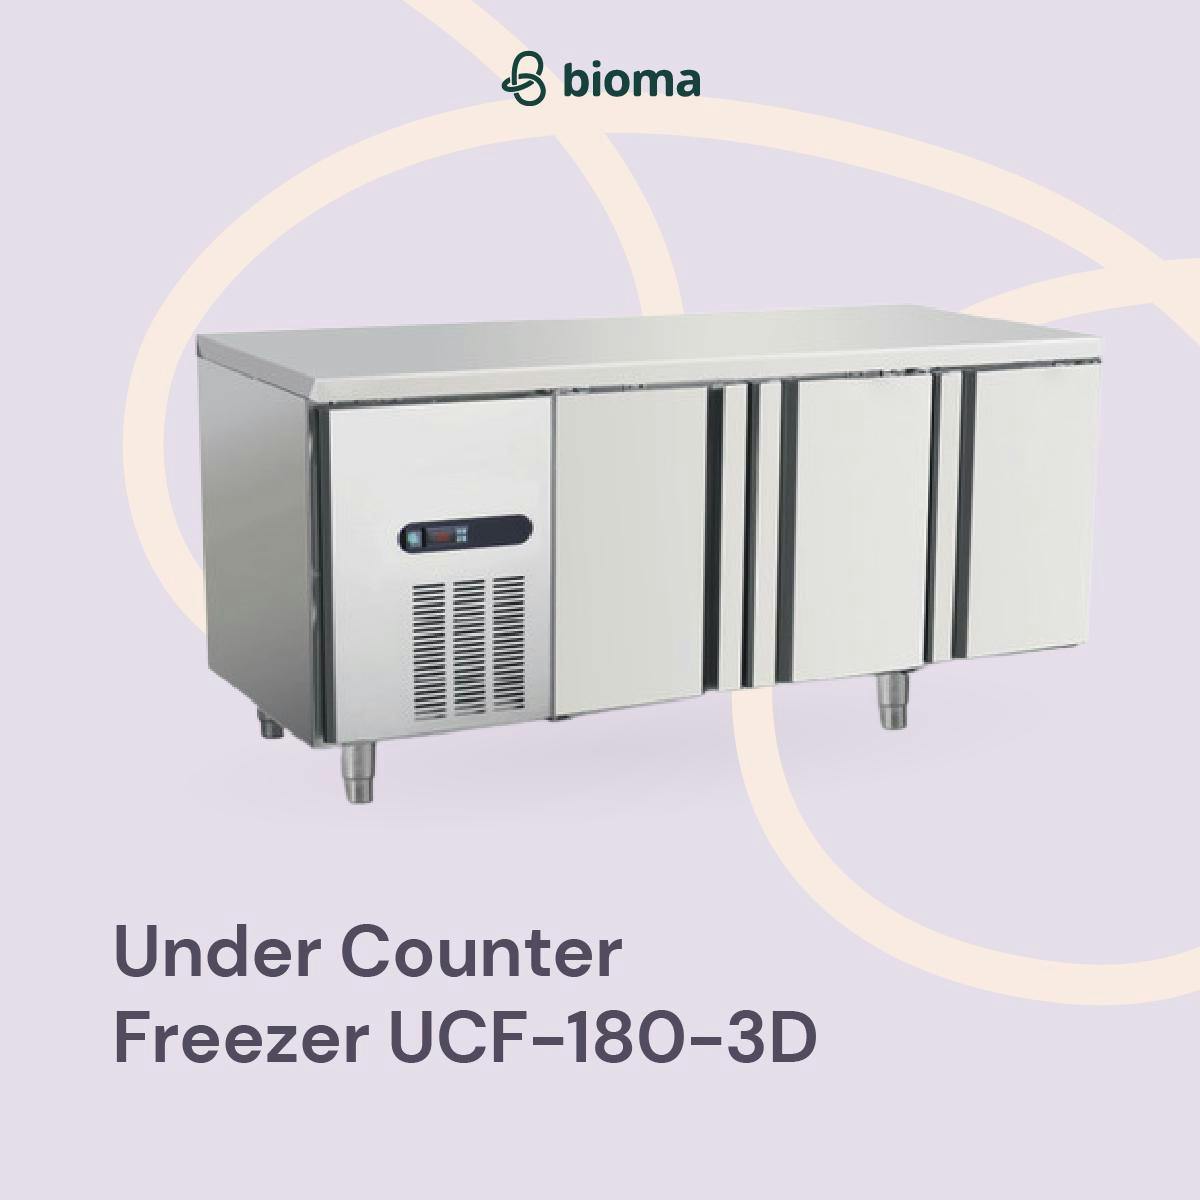 Under Counter Freezer UCF-180-3D